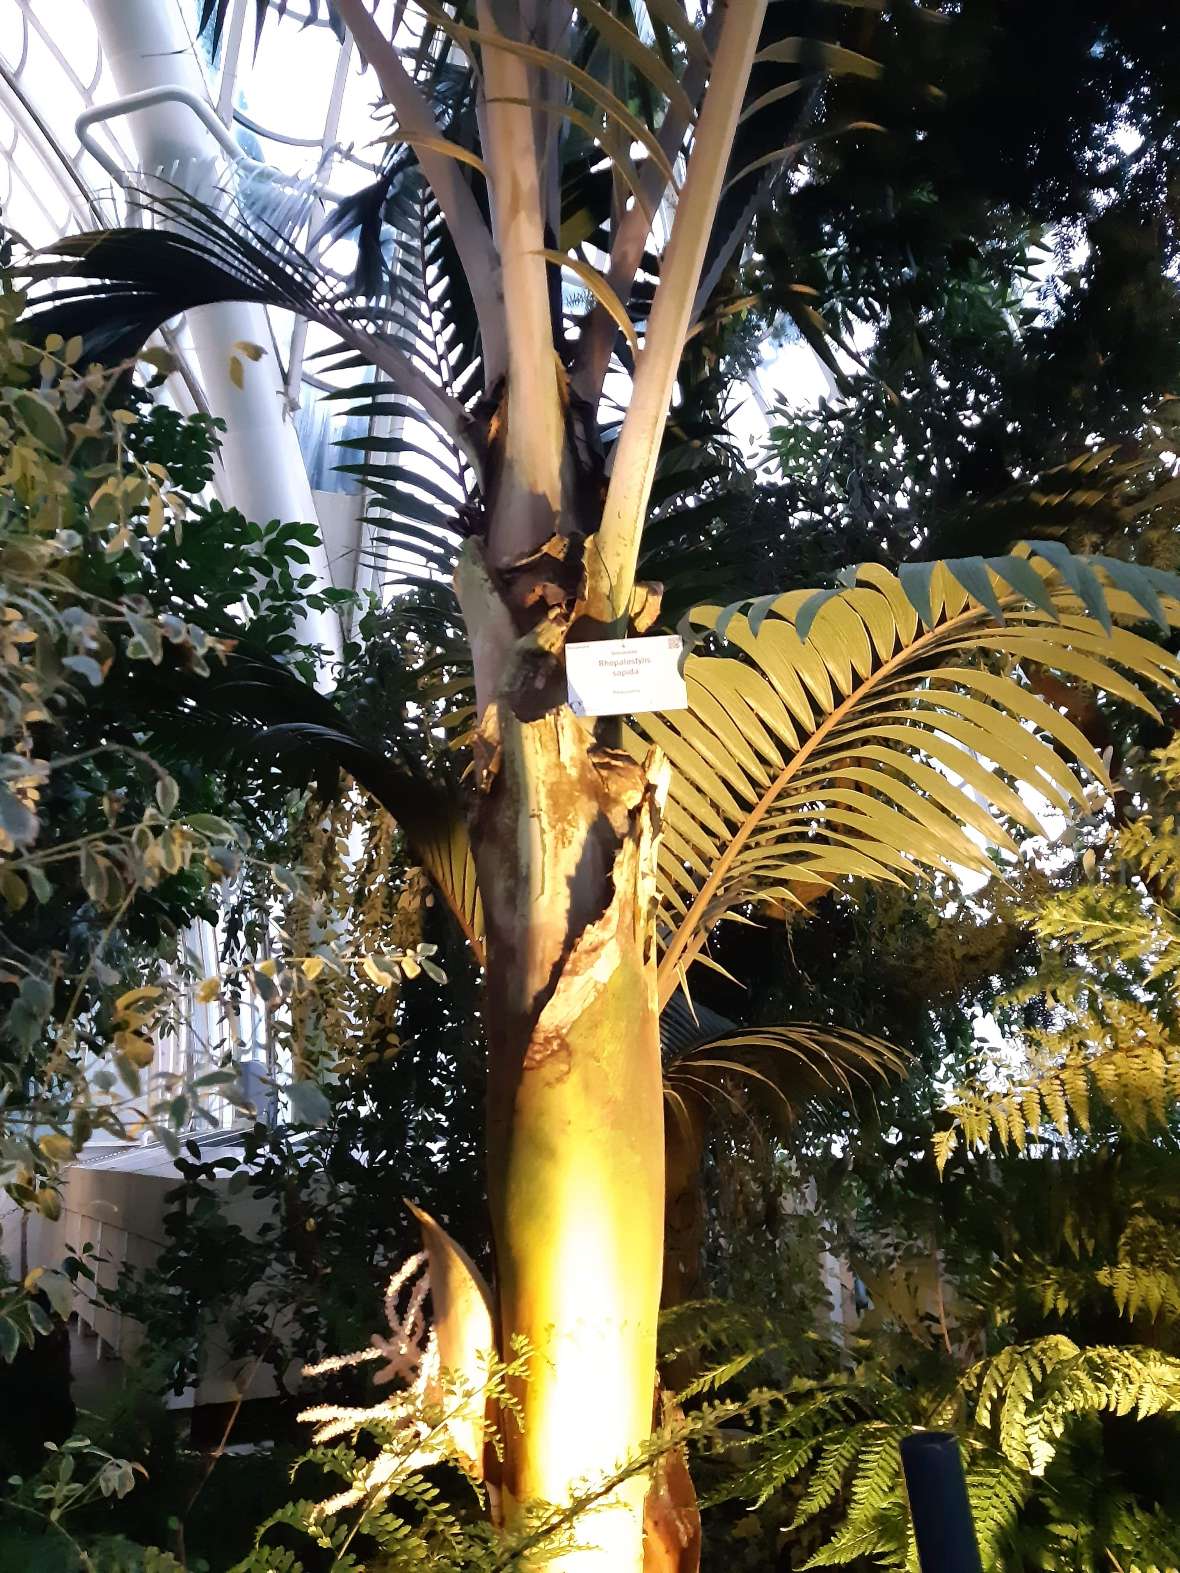 zu sehen ist eine Palme im Schönbrunner Palmenhaus